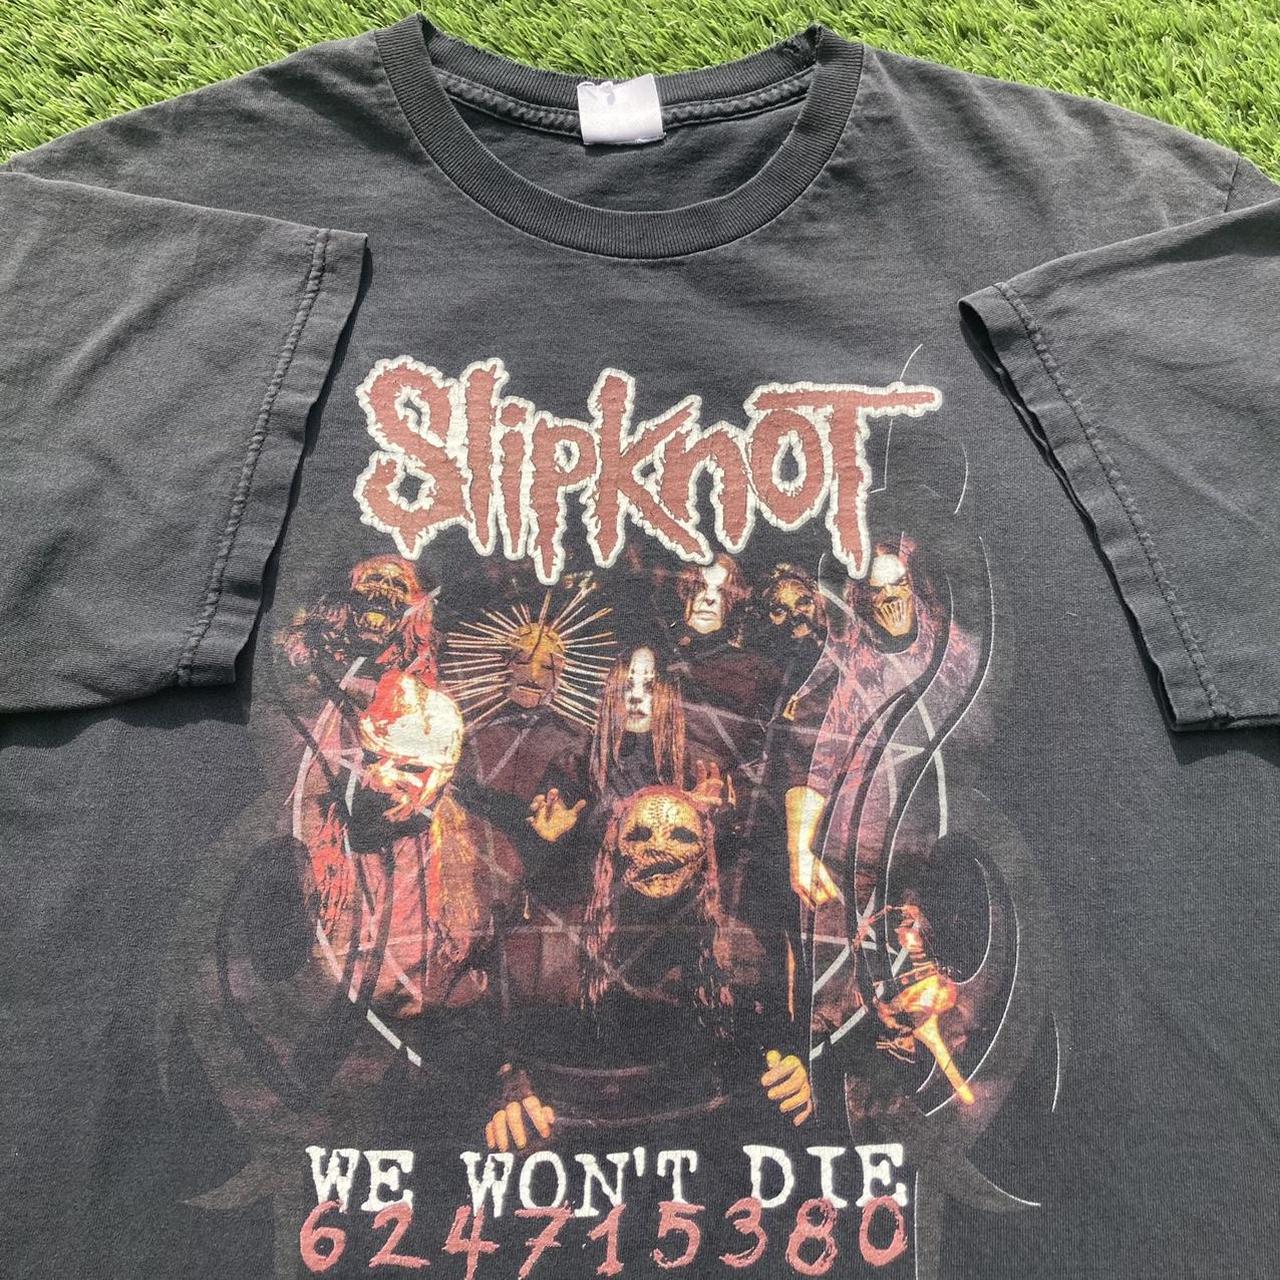 2004 Slipknot “We Won’t Die” band shirt.    tag